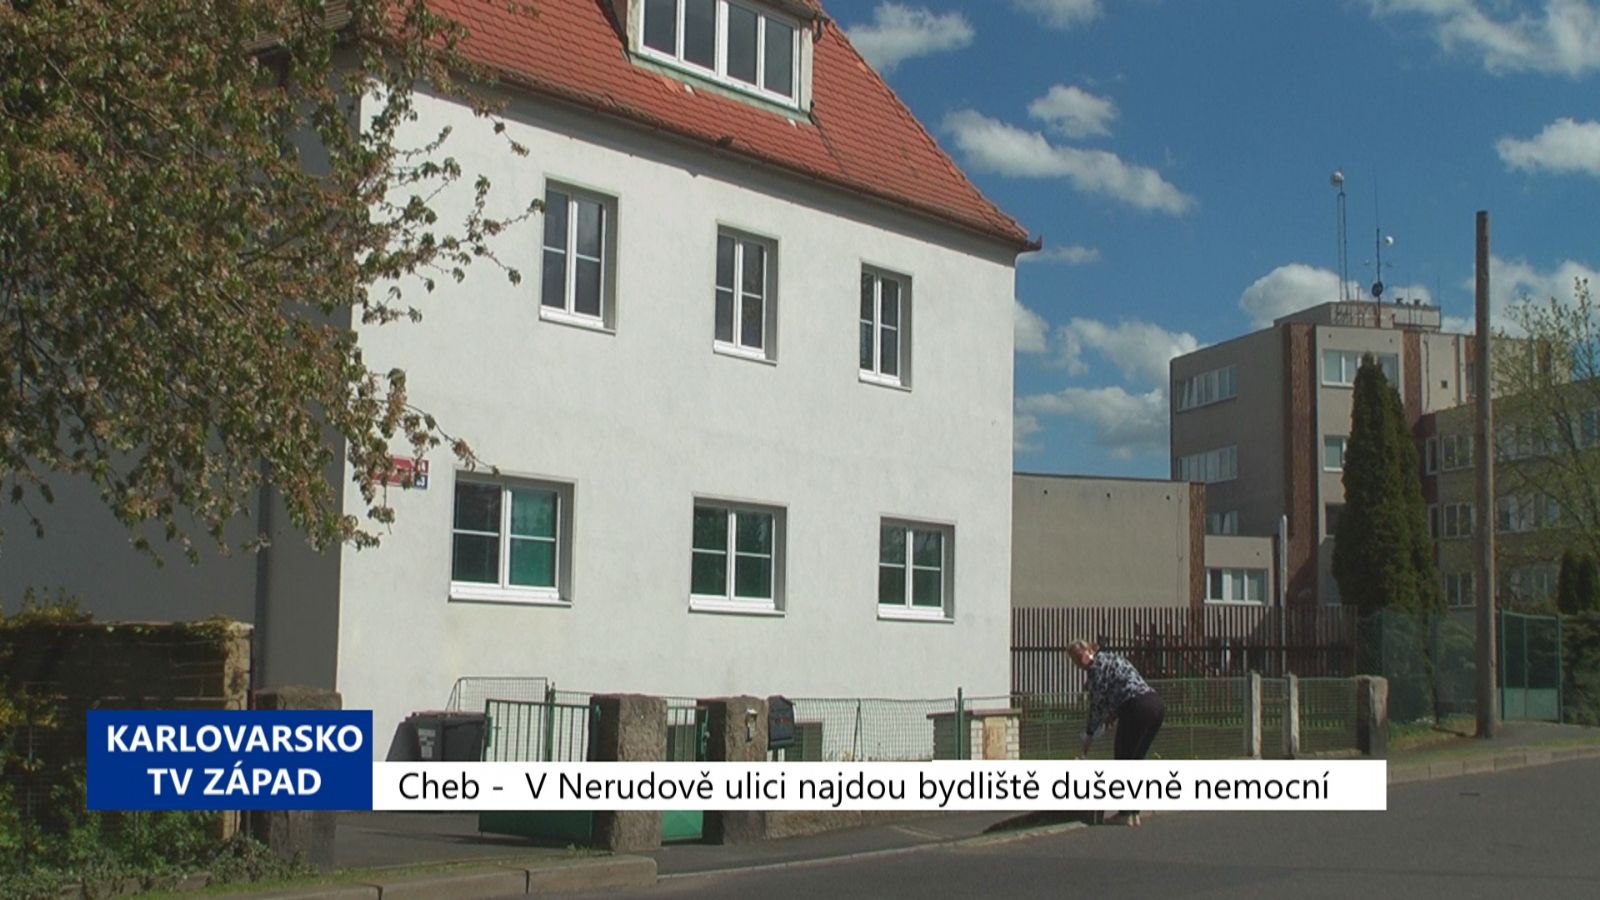 Cheb: V Nerudově ulici najdou bydliště duševně nemocní (TV Západ)